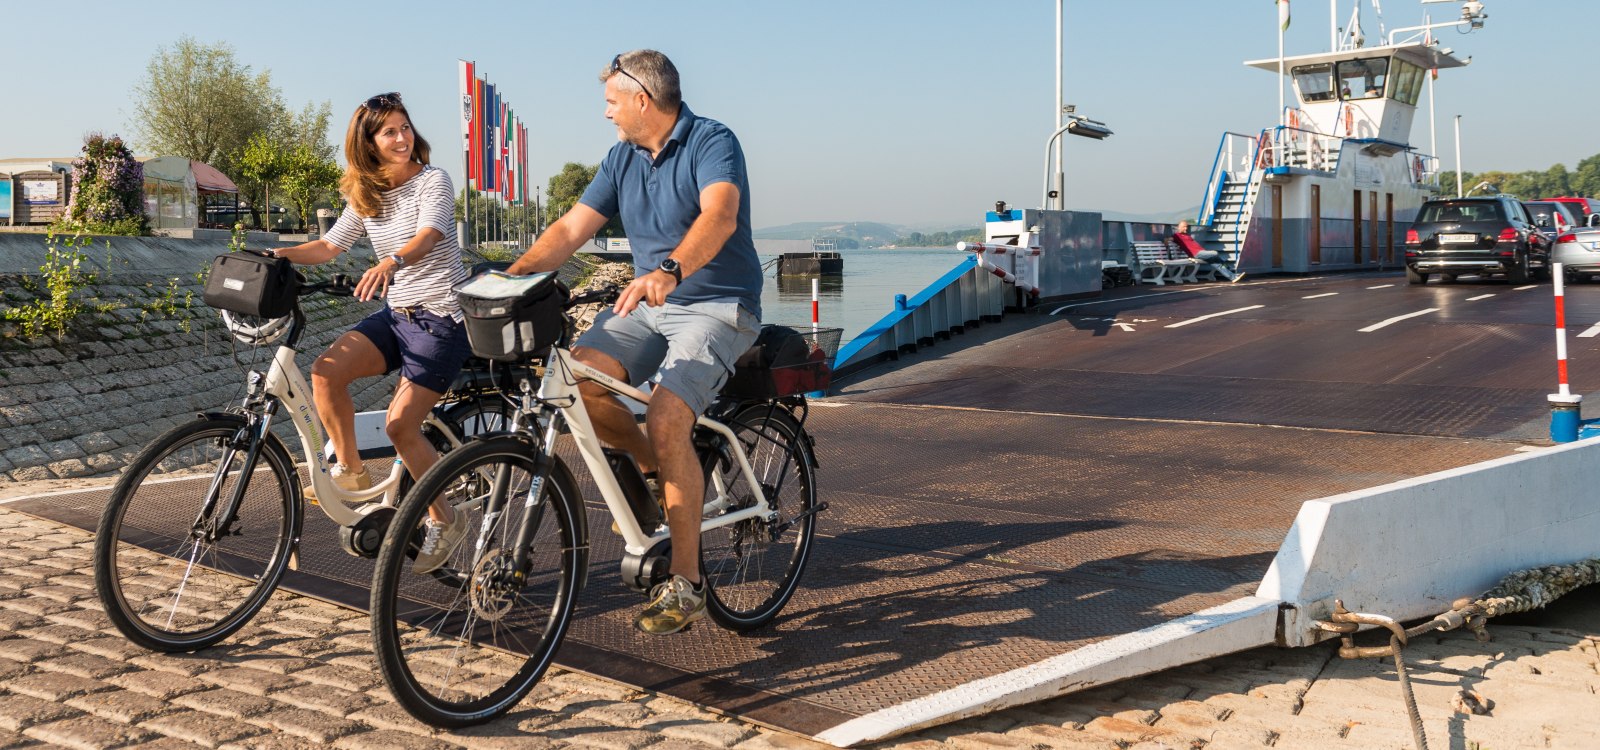 Ferry - arrival with the bikes in Ingelheim, © Dominik Ketz/Rheinhessen-Touristik GmbH